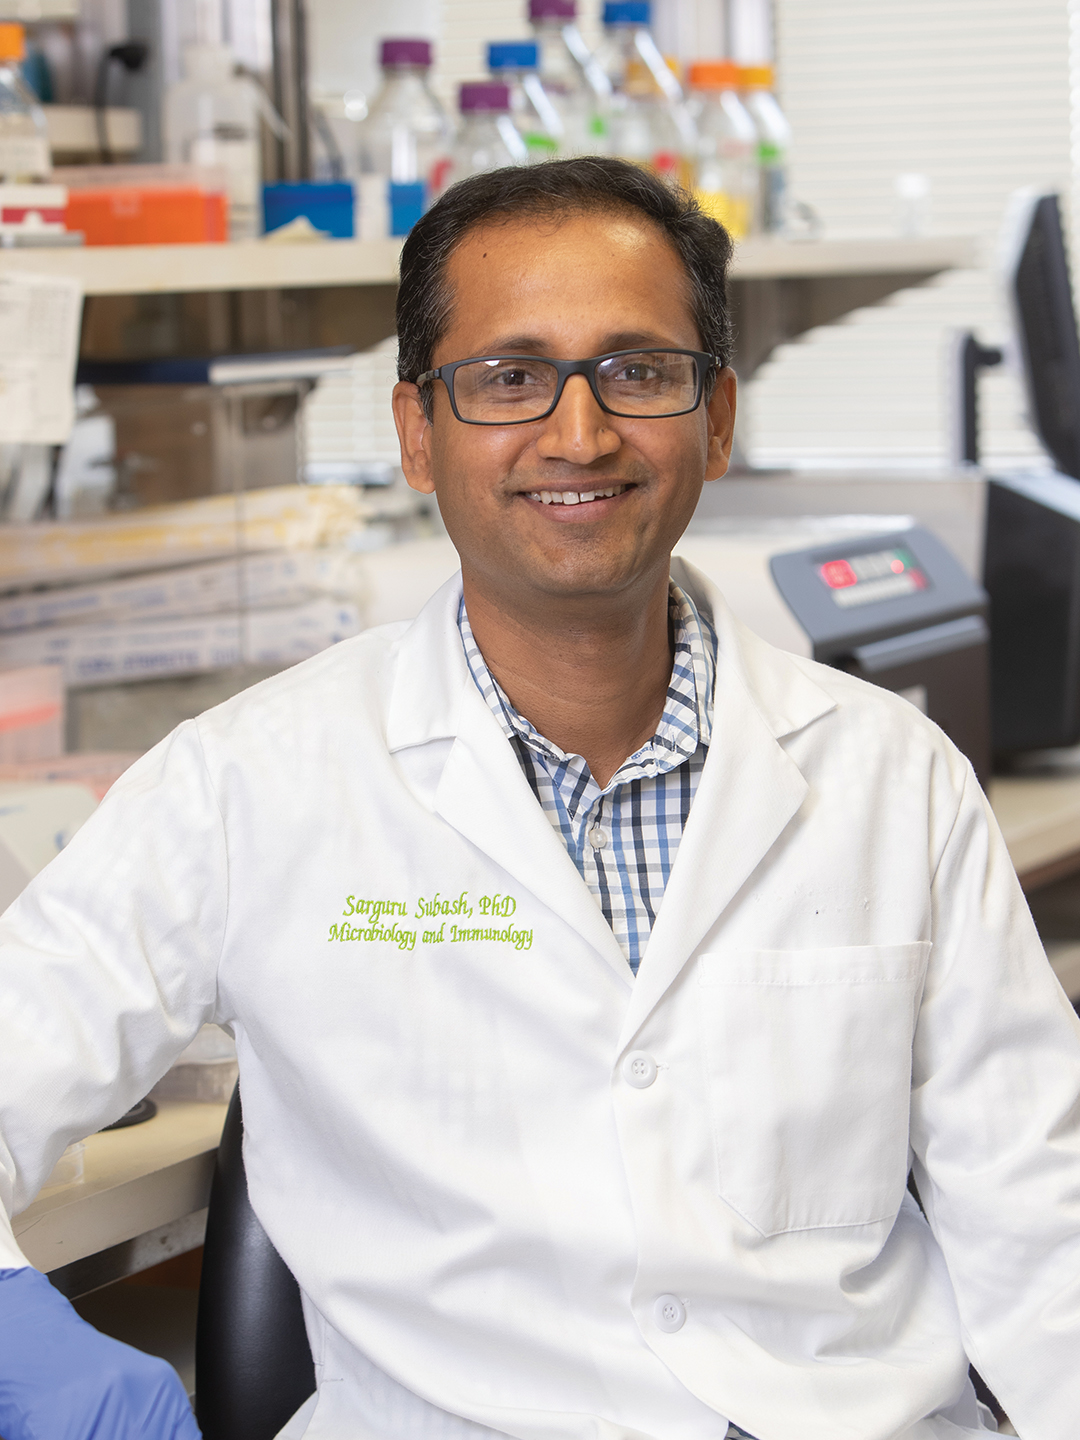 Dr. Sarguru Subash in a white lab coat